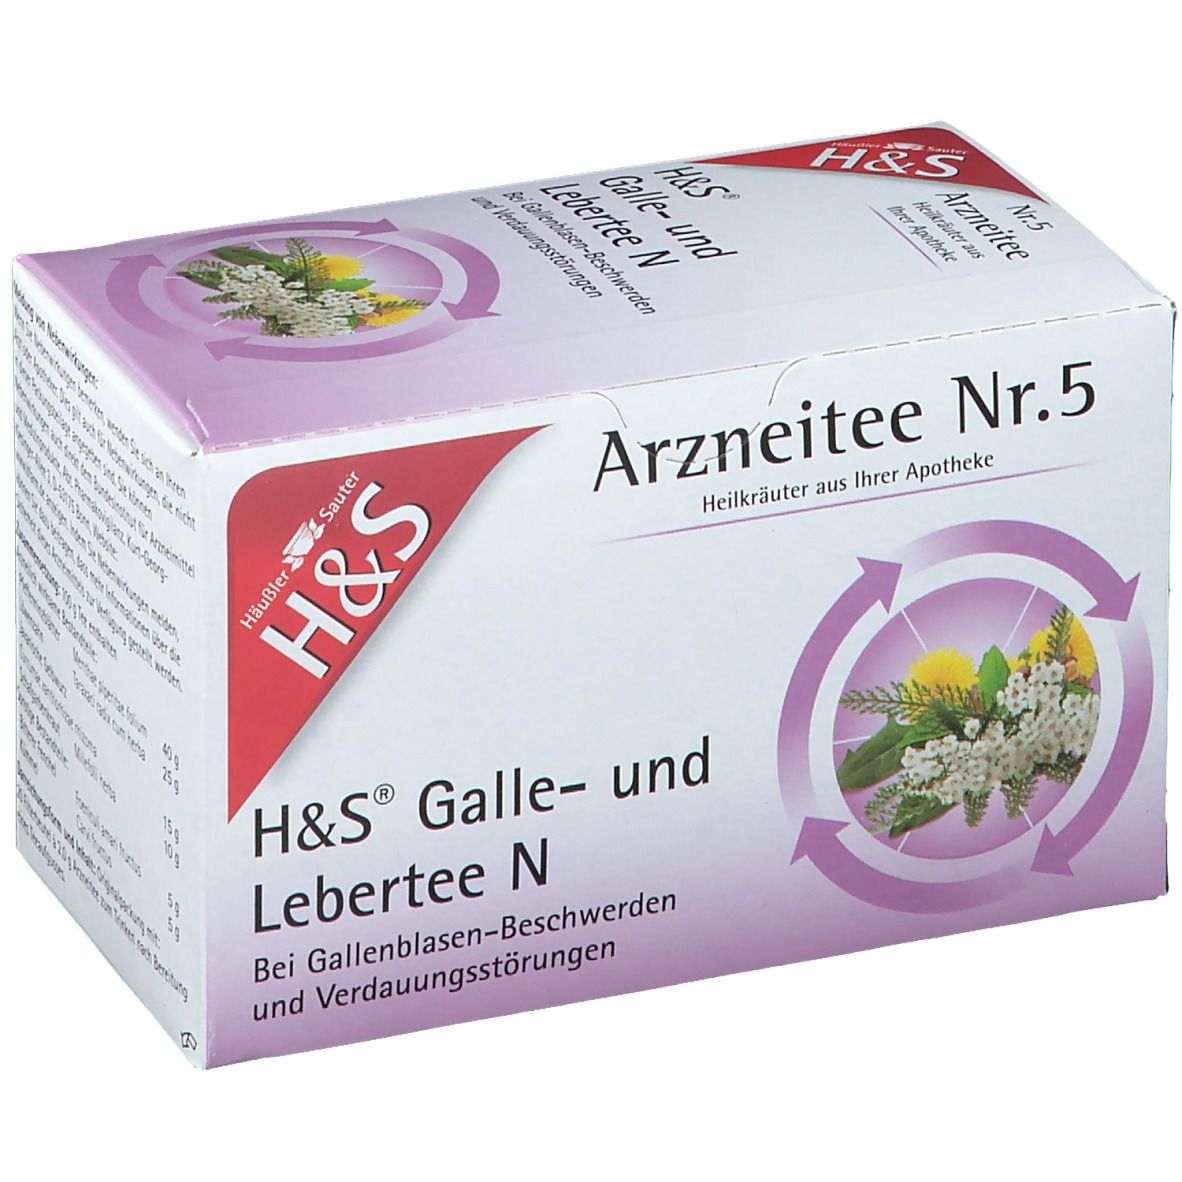 H&S Galle- und Lebertee N Nr. 5